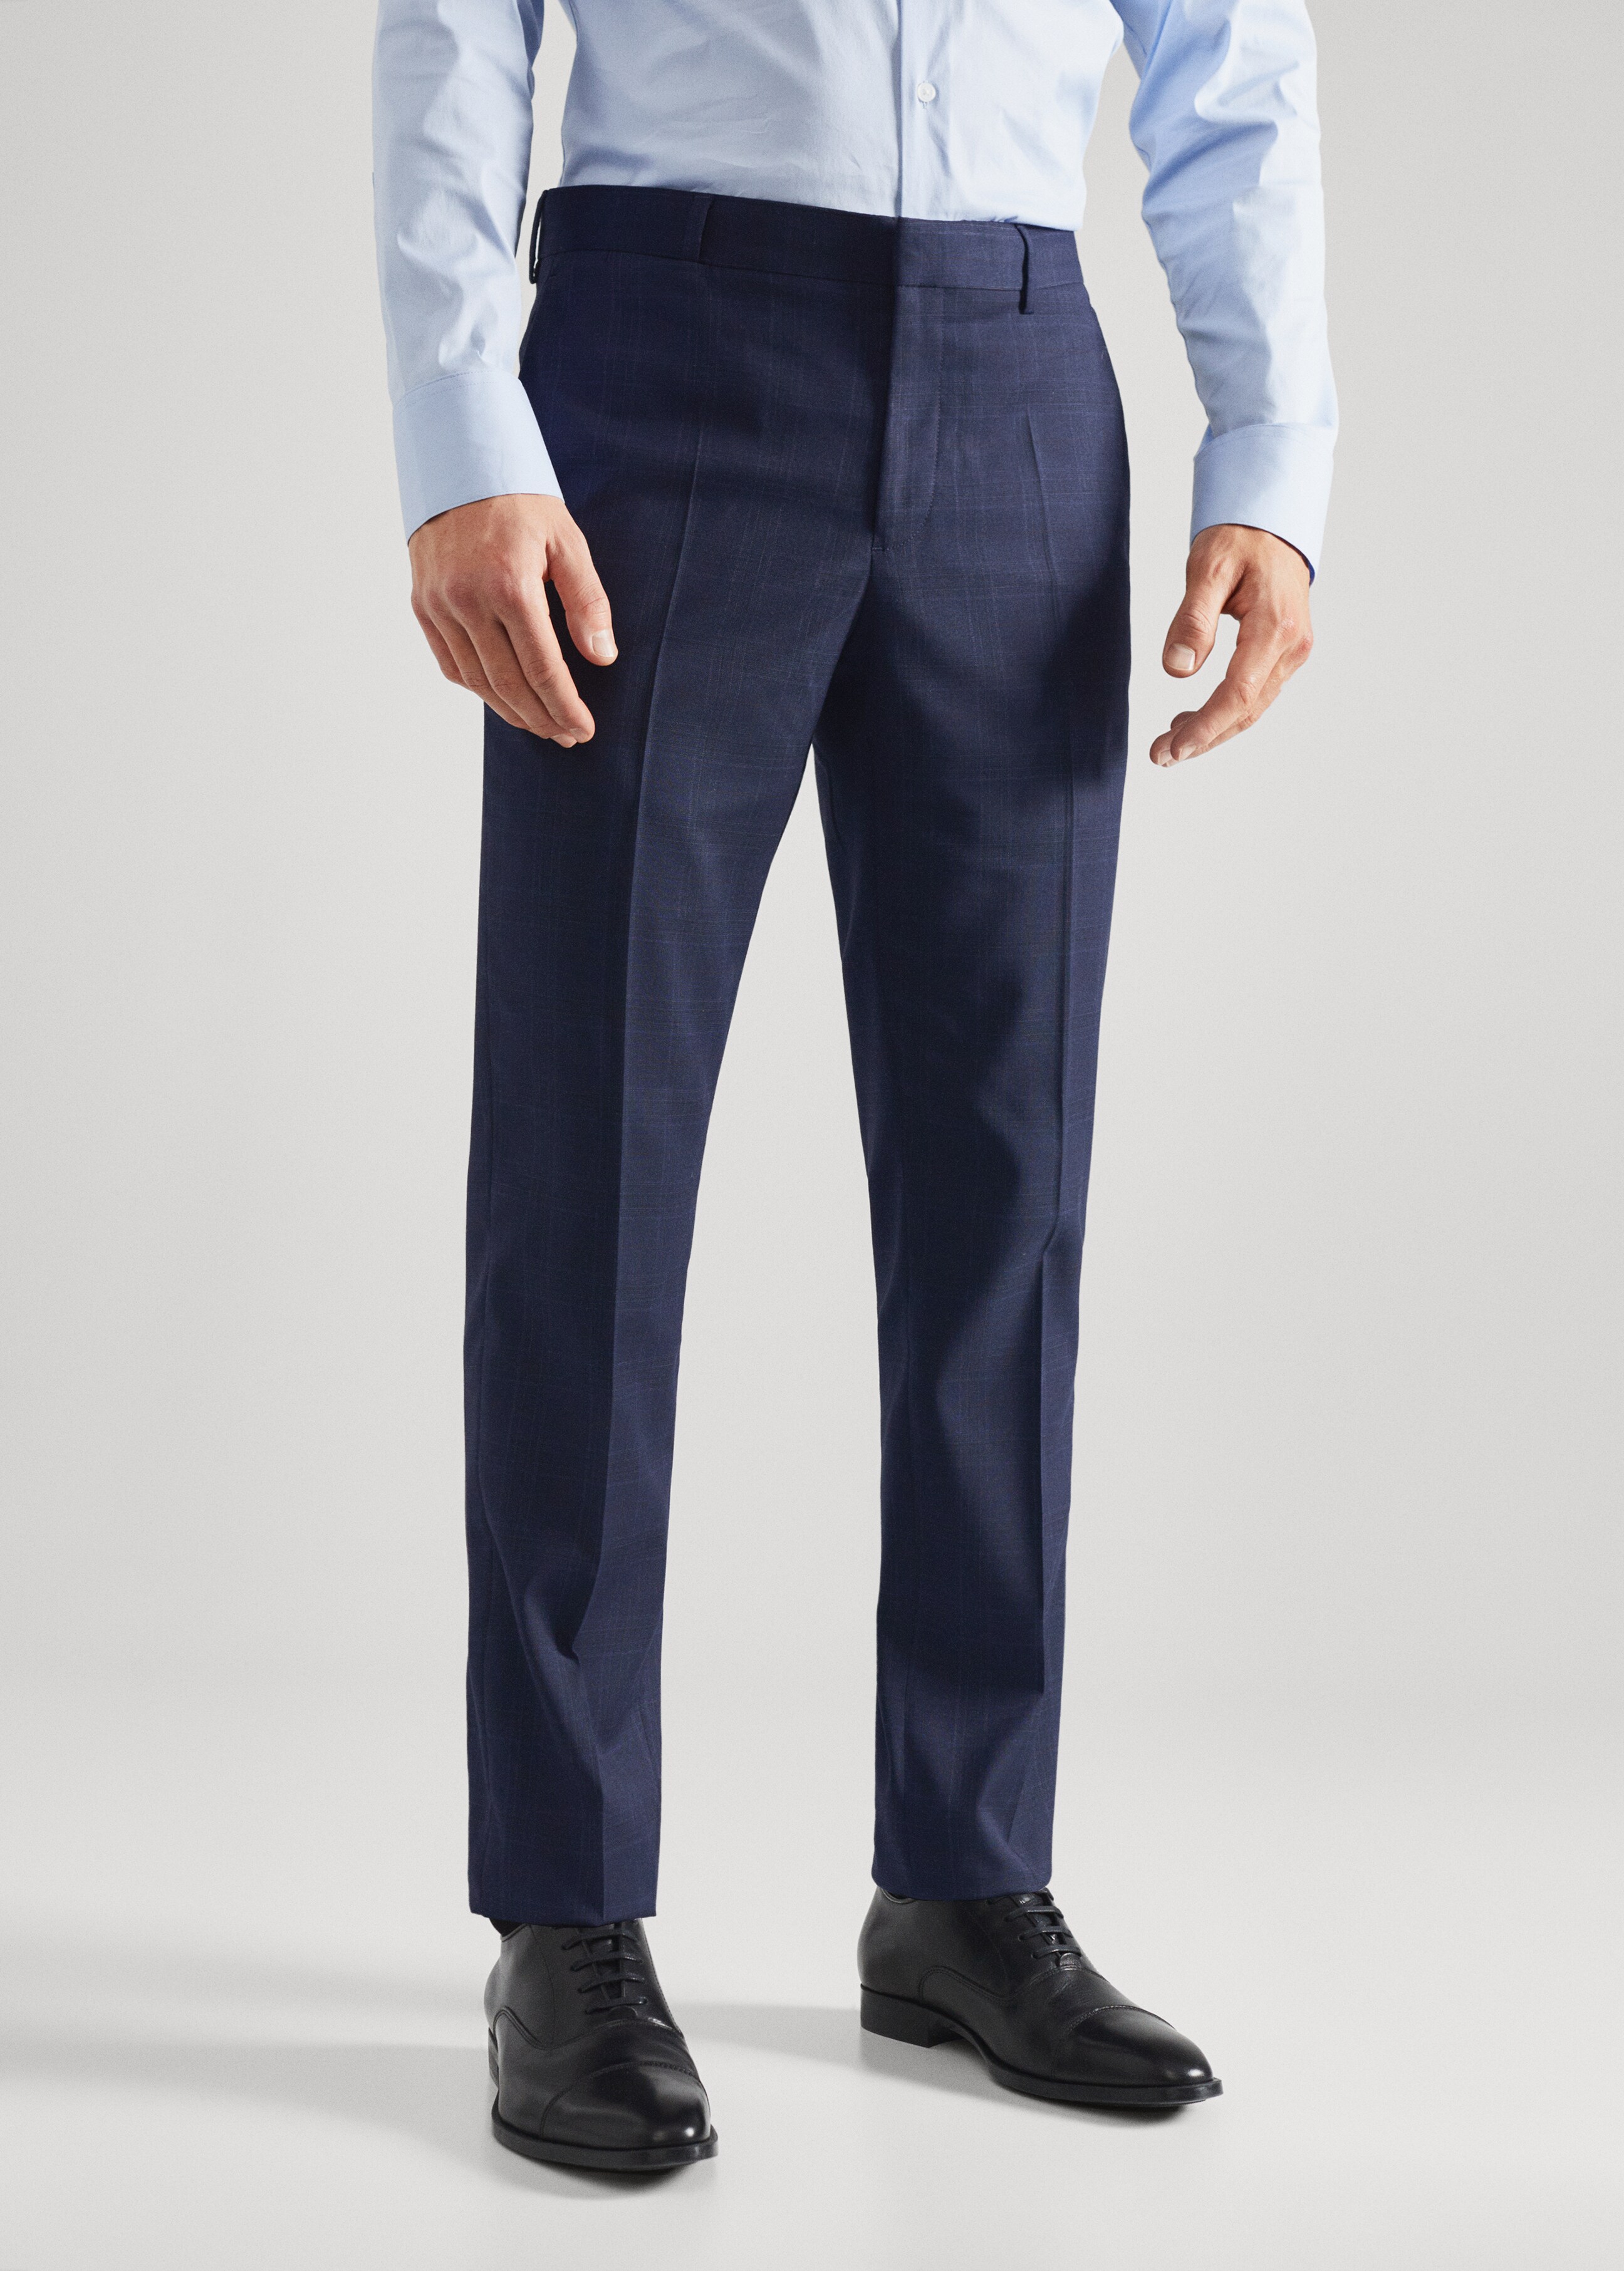 Super slim fit suit trousers - Medium plane